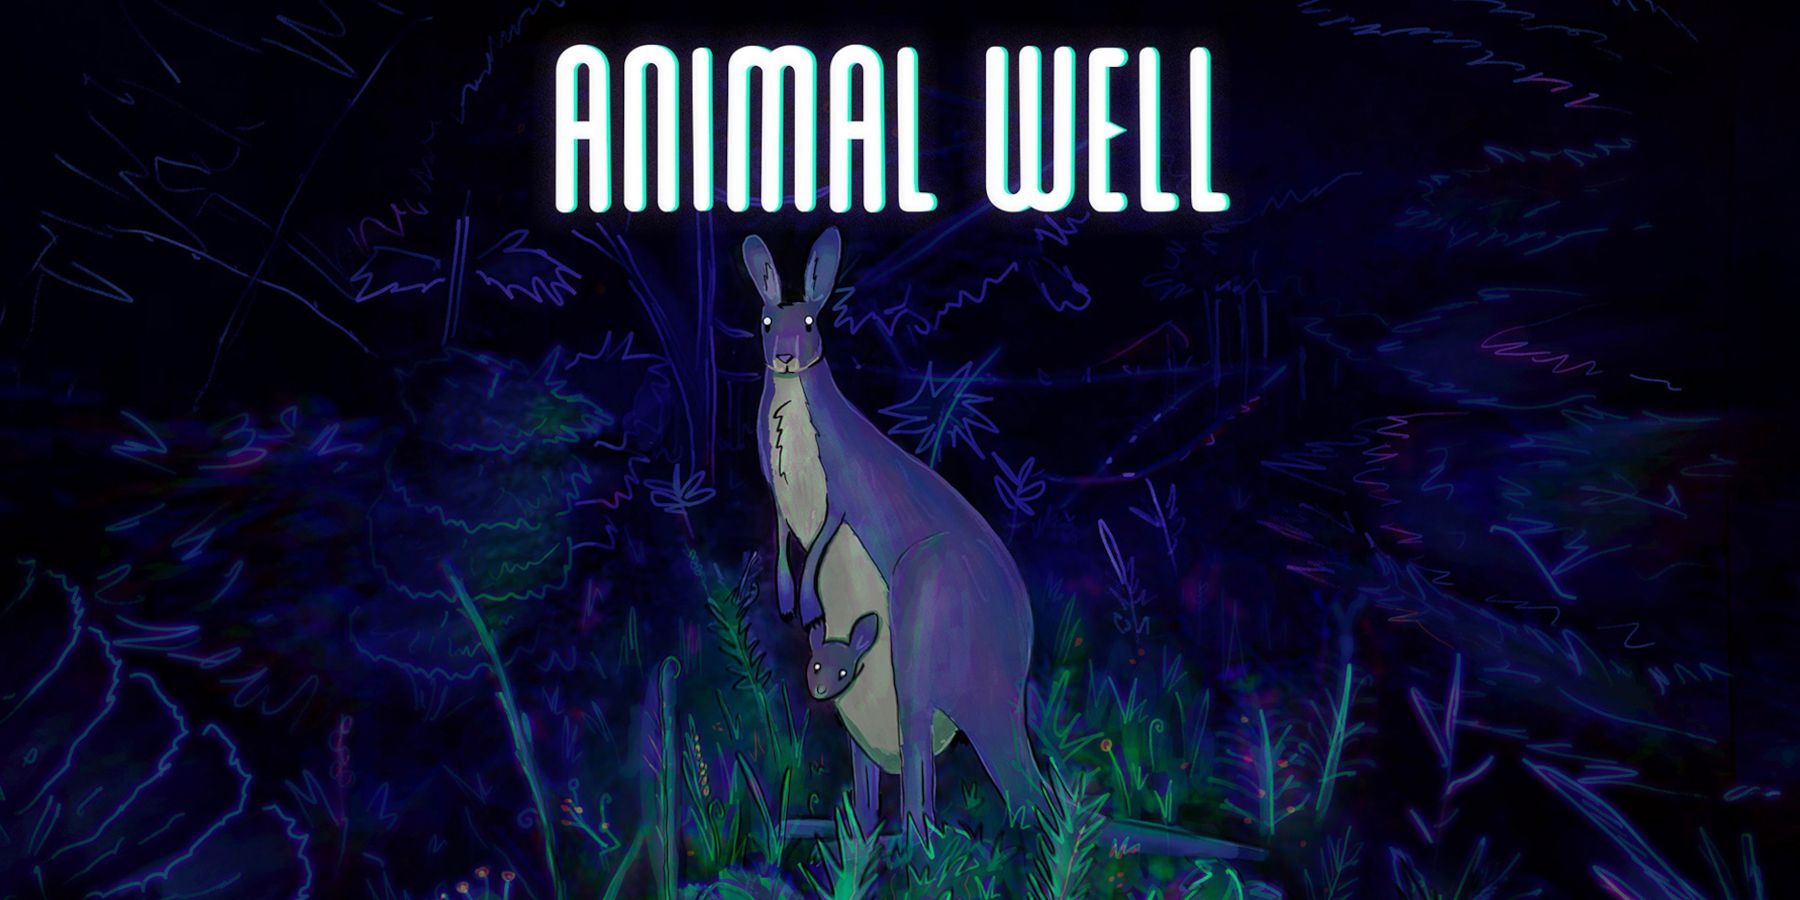 Animal Well Review: “Uno de los títulos de Metroidvania más impresionantes de los últimos años”